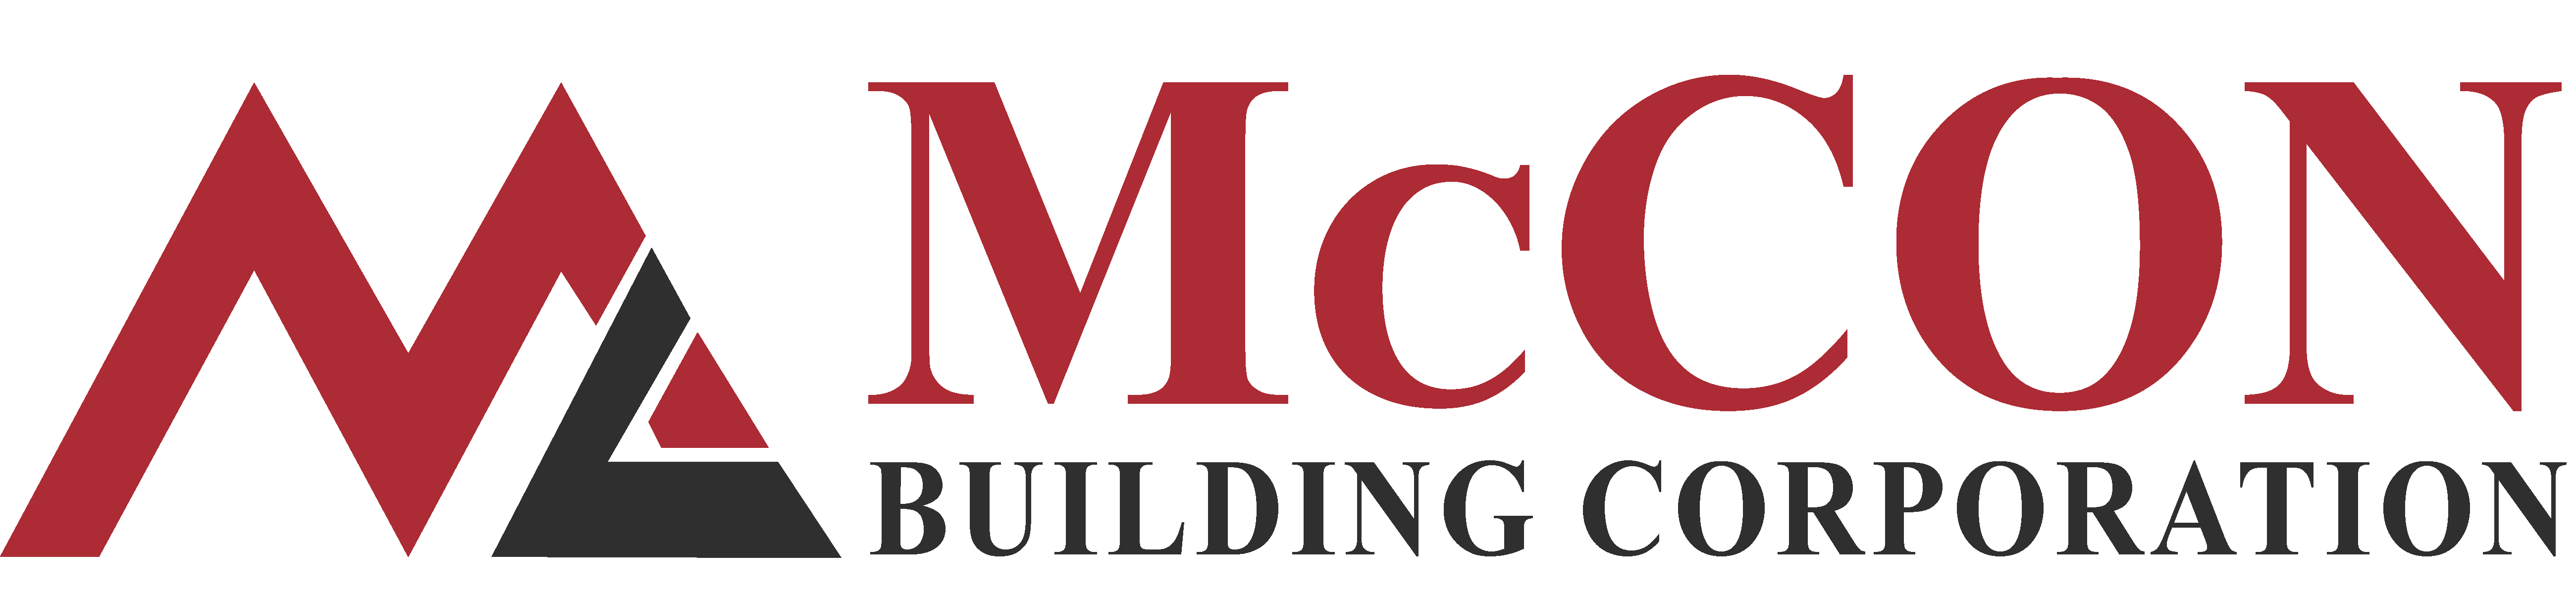 McCon Building